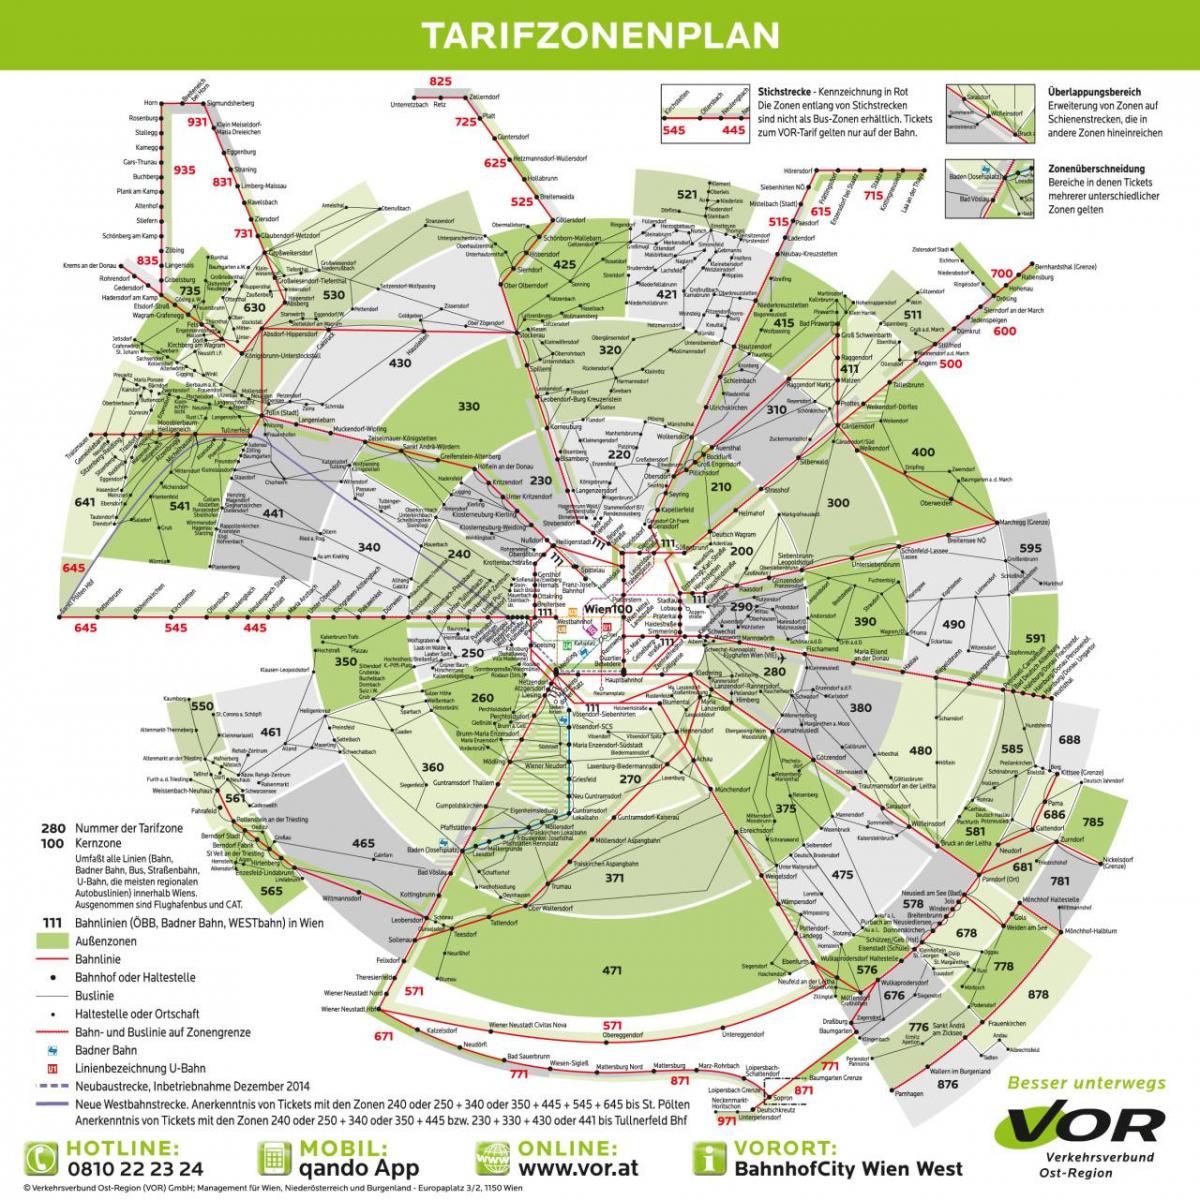 Karta över Wien transport zoner